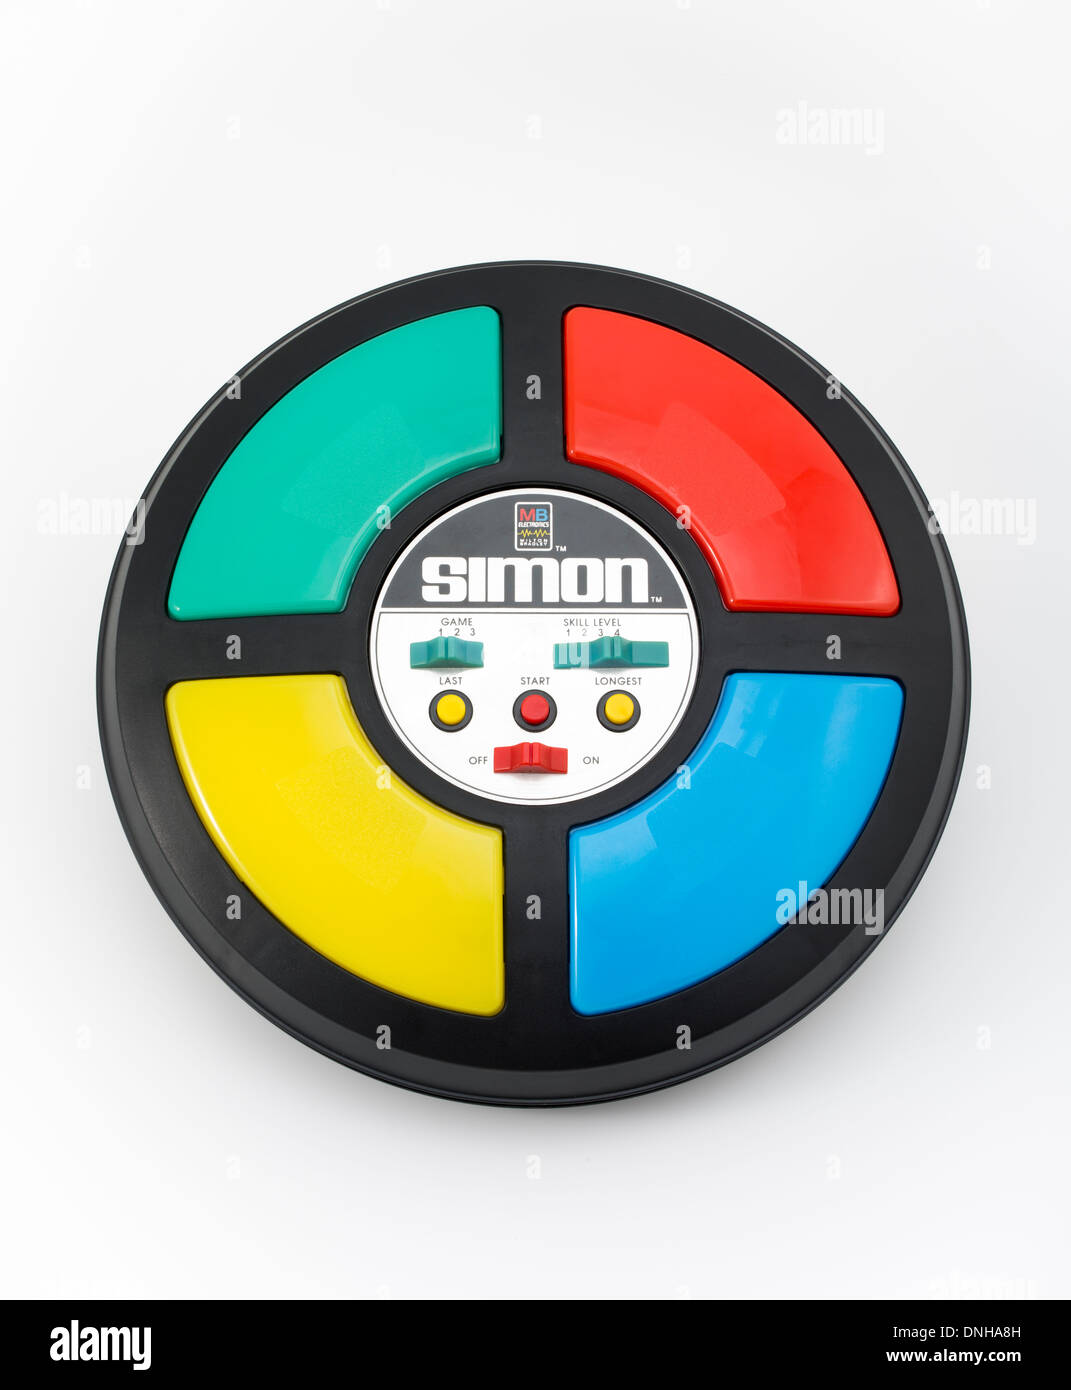 Simon juego electrónico por Milton Bradley lanzó en 1978 el Studio 54.  Icono de la cultura pop de los ochenta. Juguete clásico Fotografía de stock  - Alamy